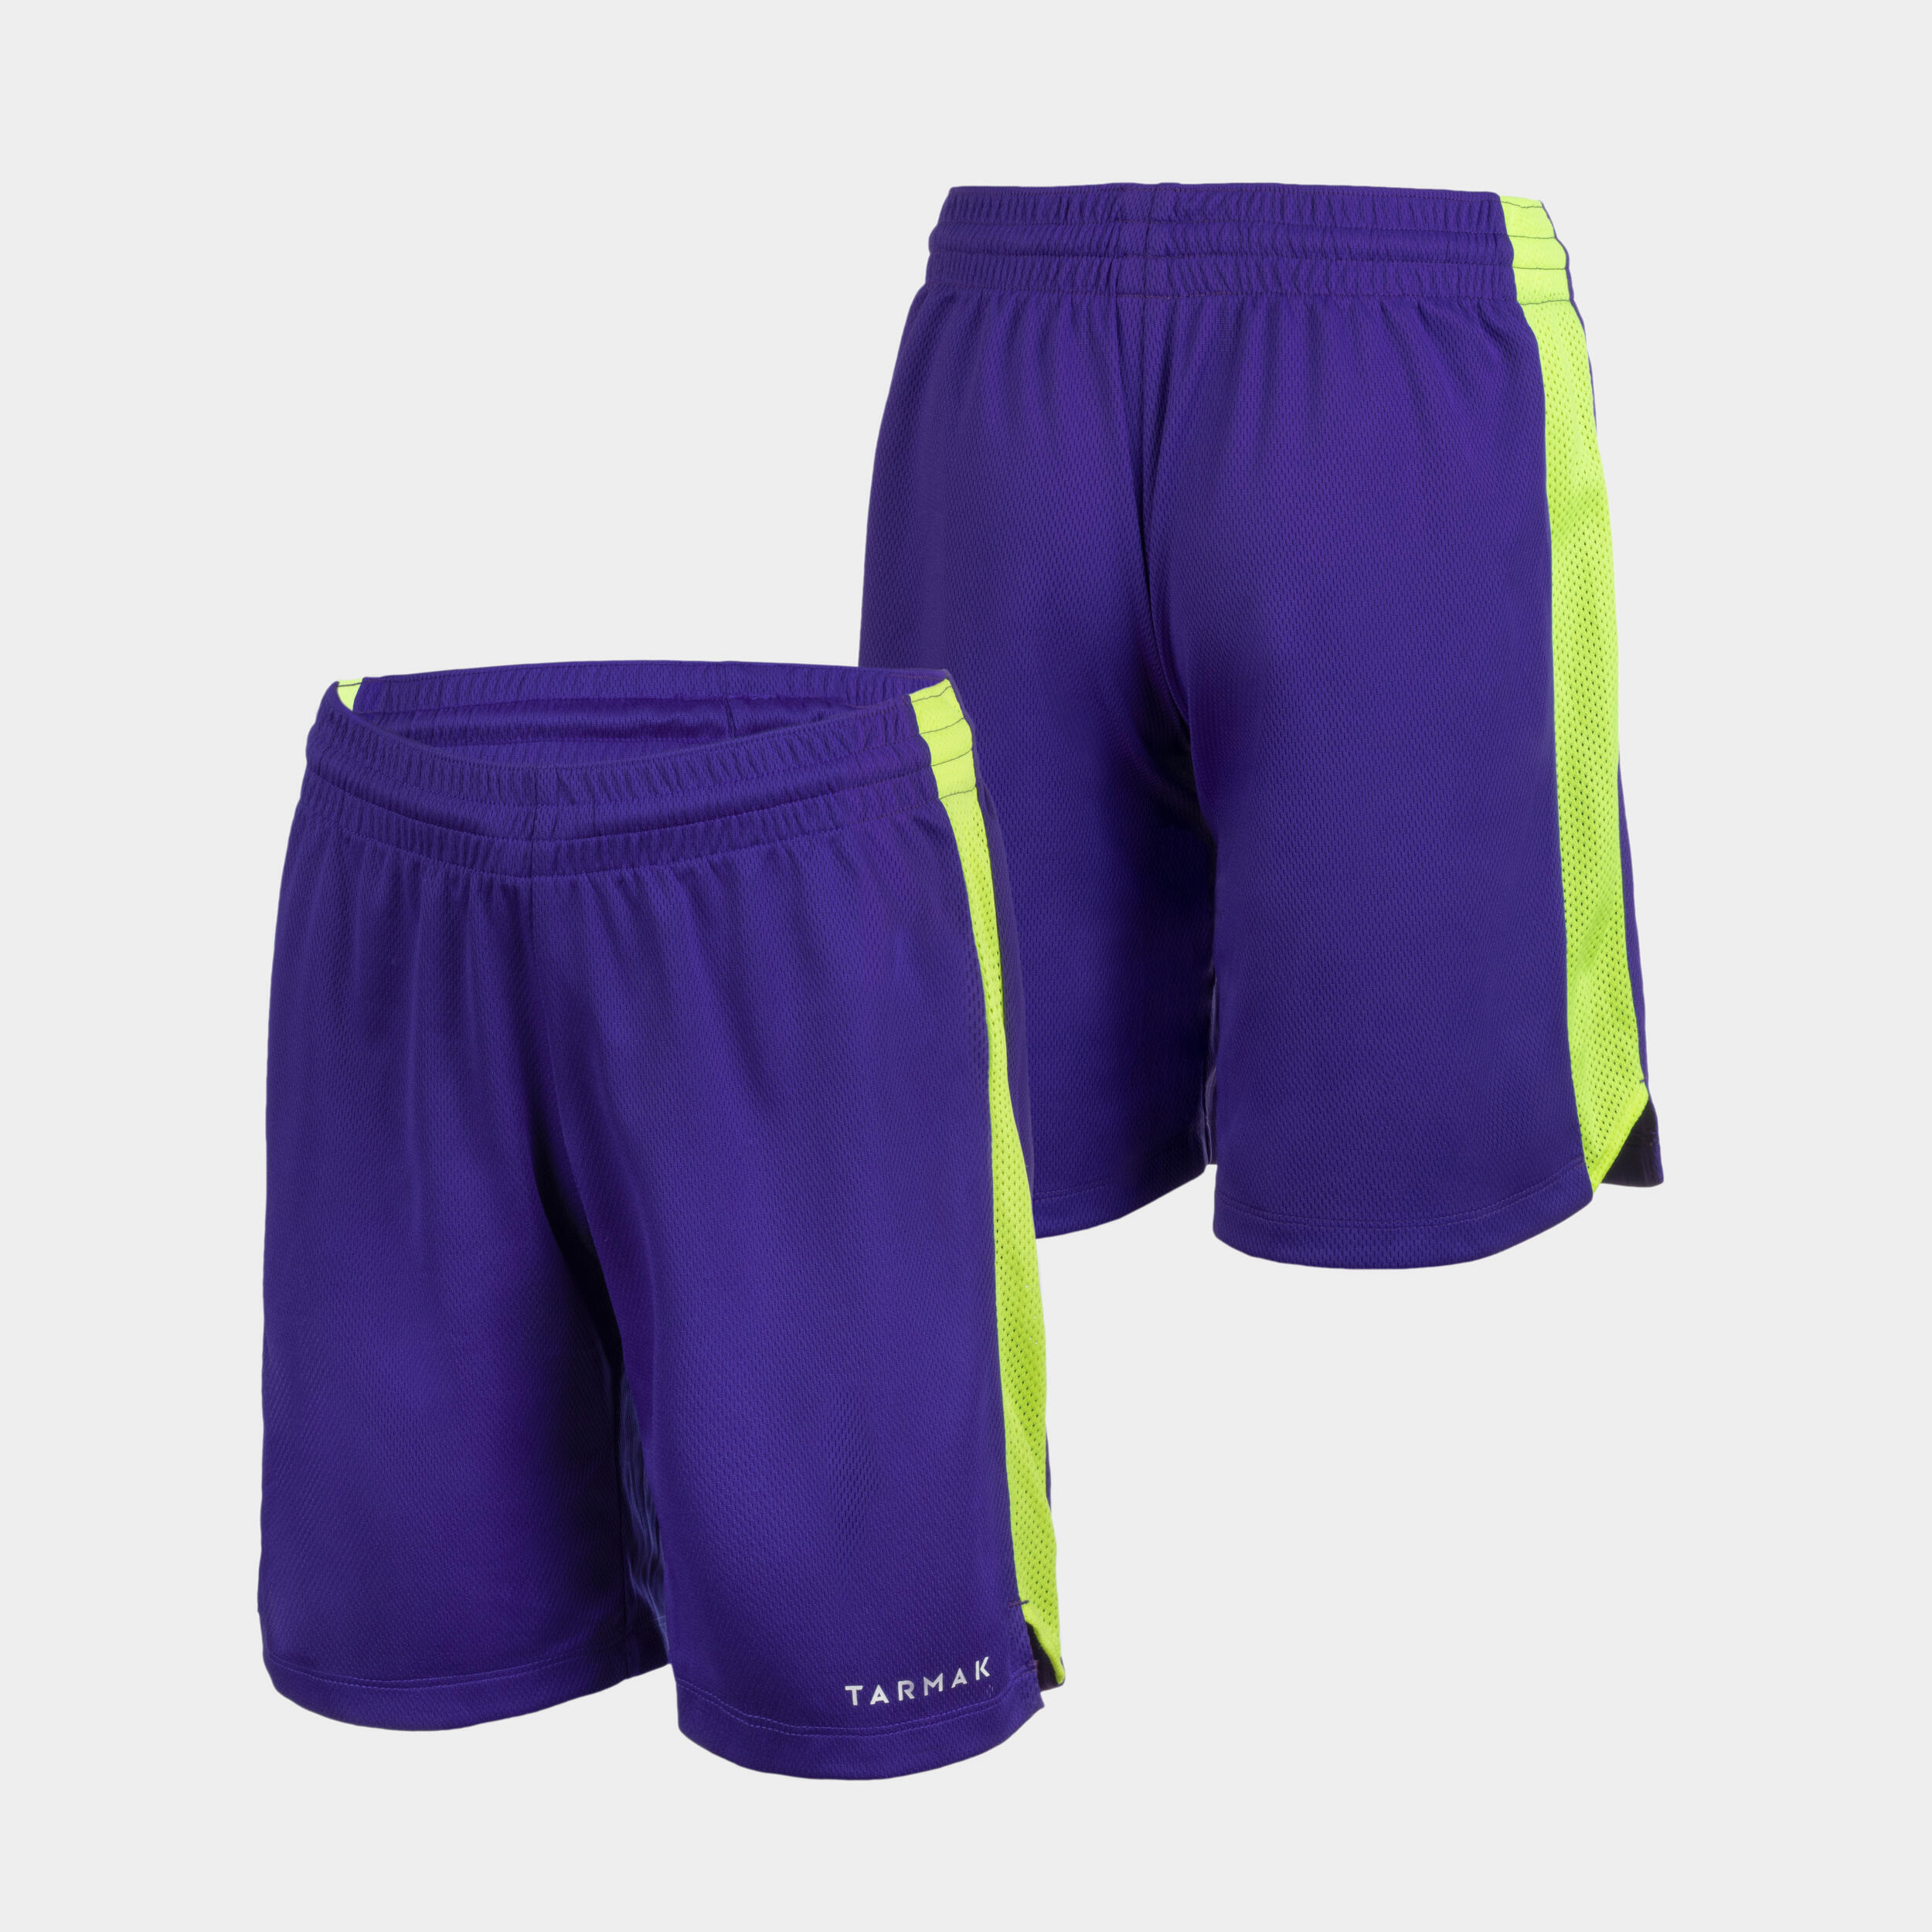 Kids' Basketball Shorts SH500 - Purple/Yellow 2/5